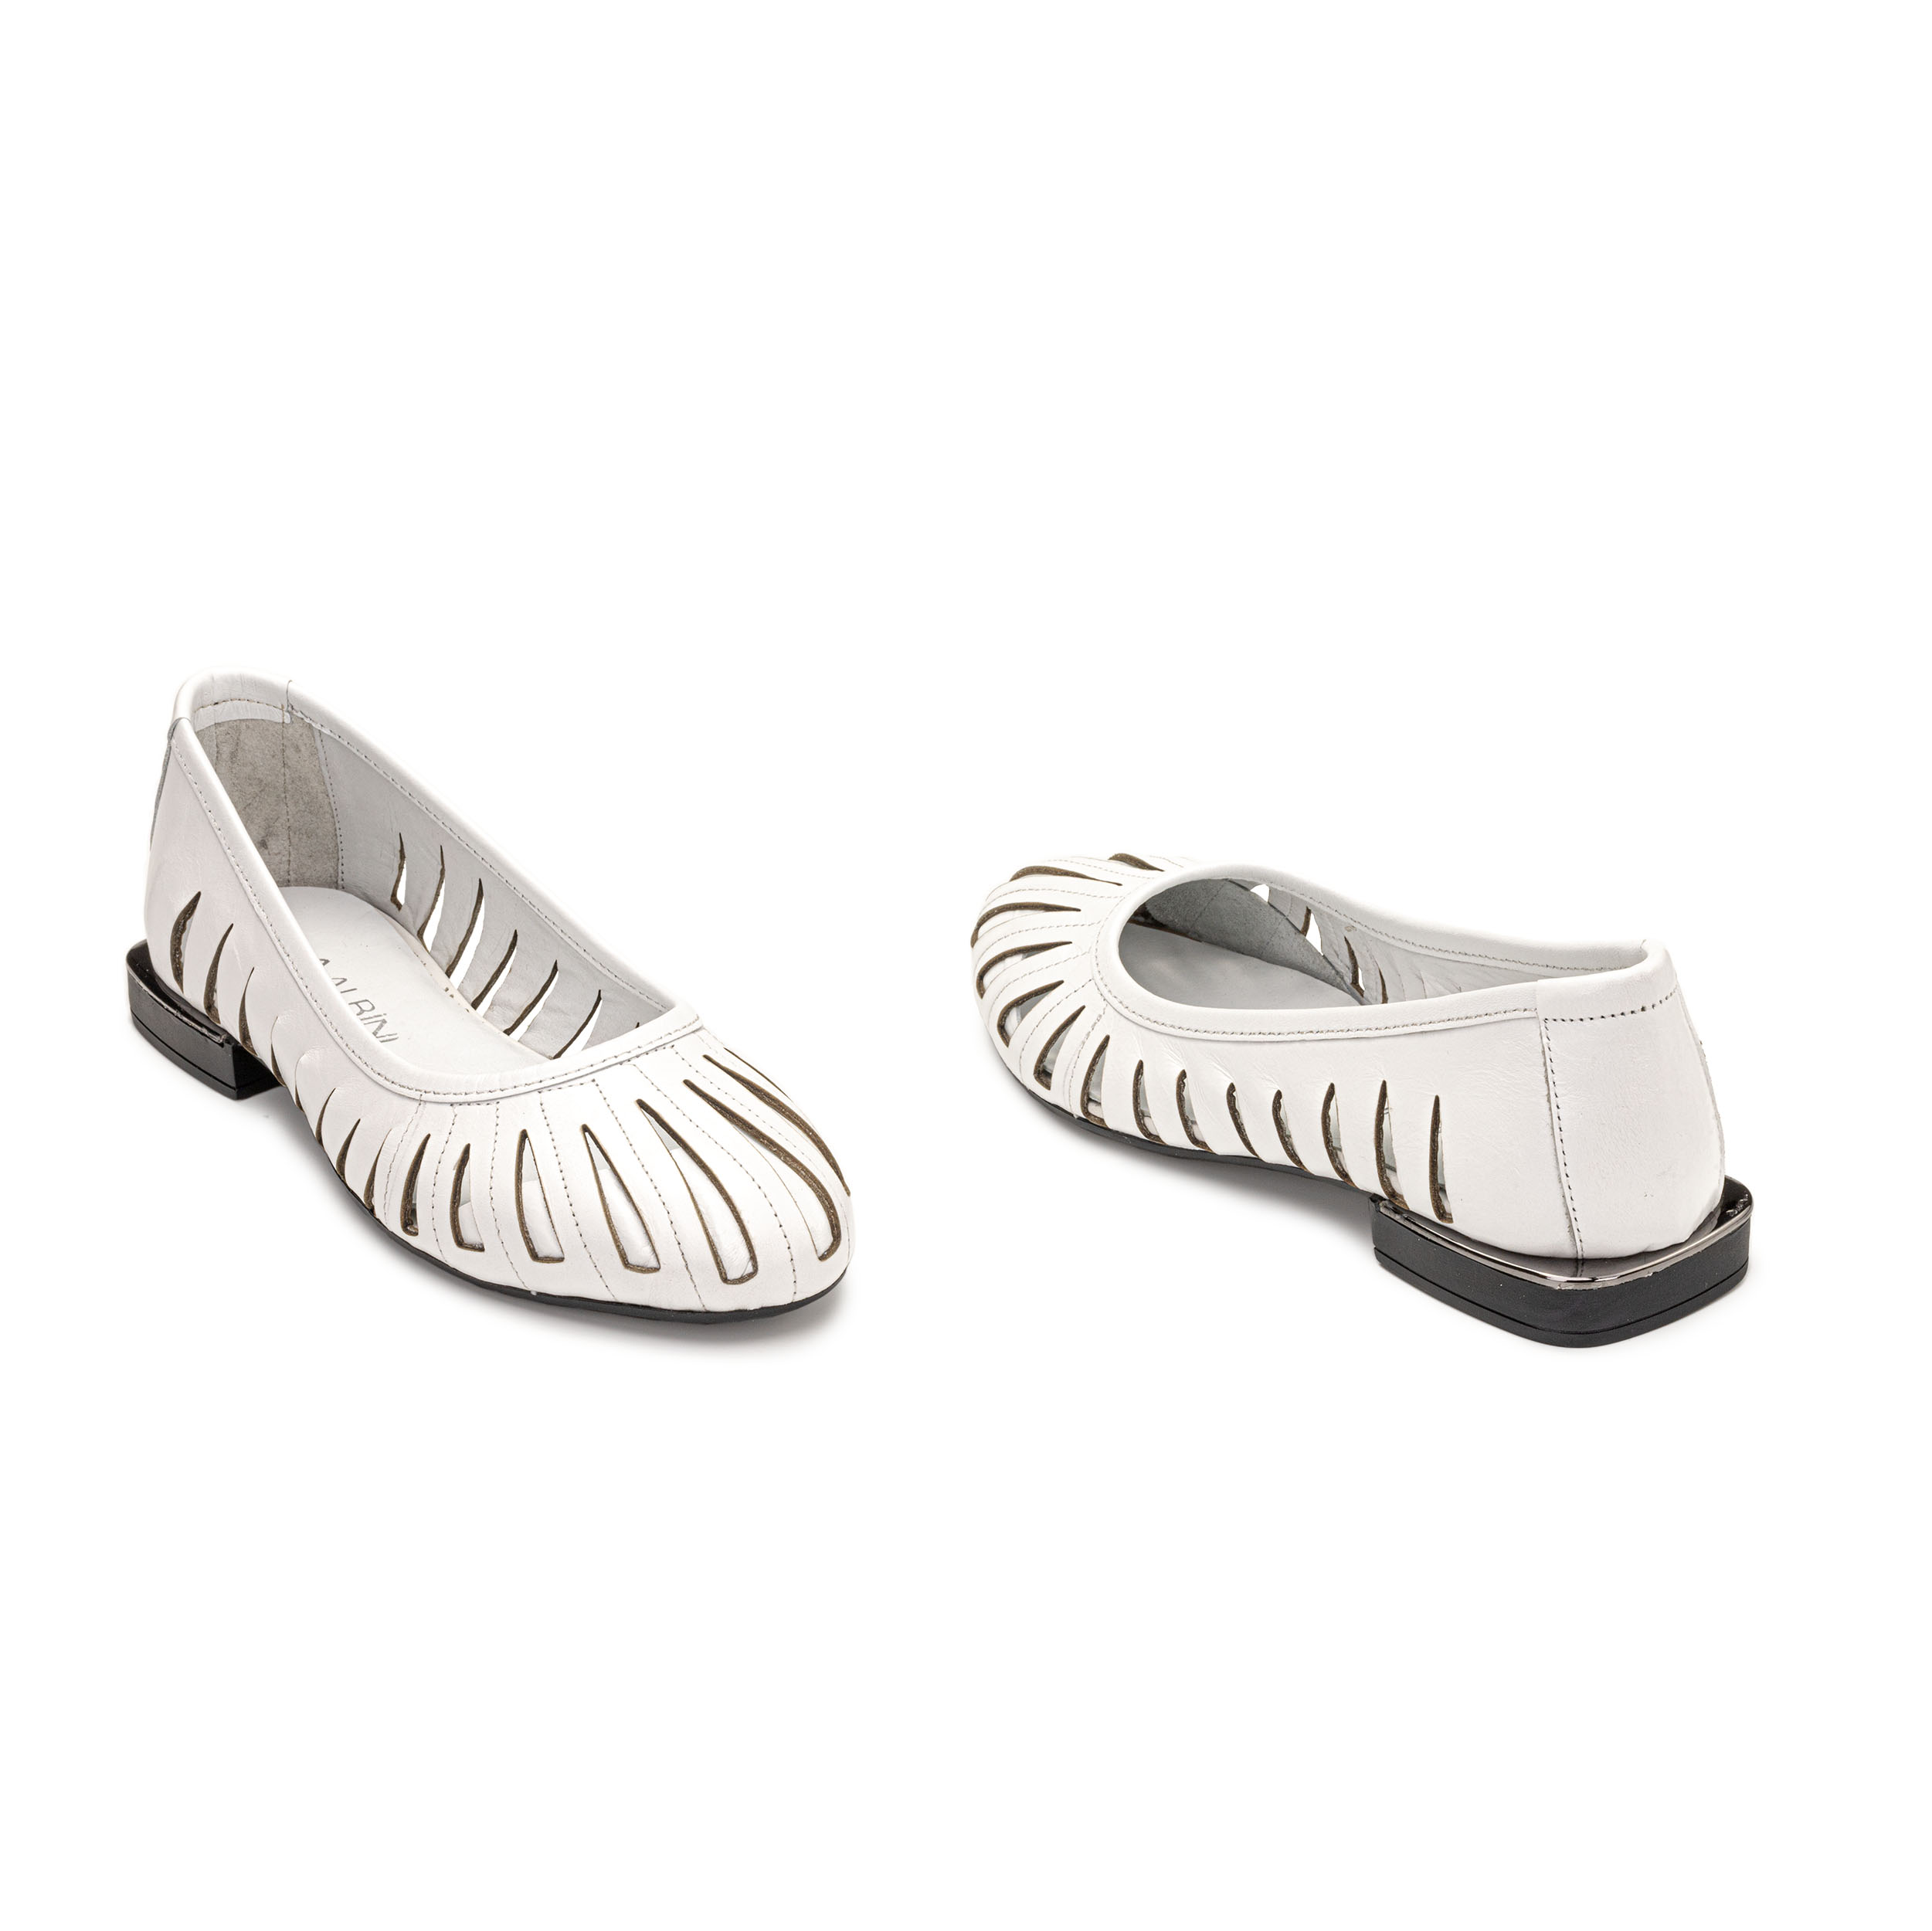 TwoEgoist Kadın Hakiki Deri Günlük Rahat Loafer - Babet Ayakkabı, Renk: Beyaz, Beden: 36